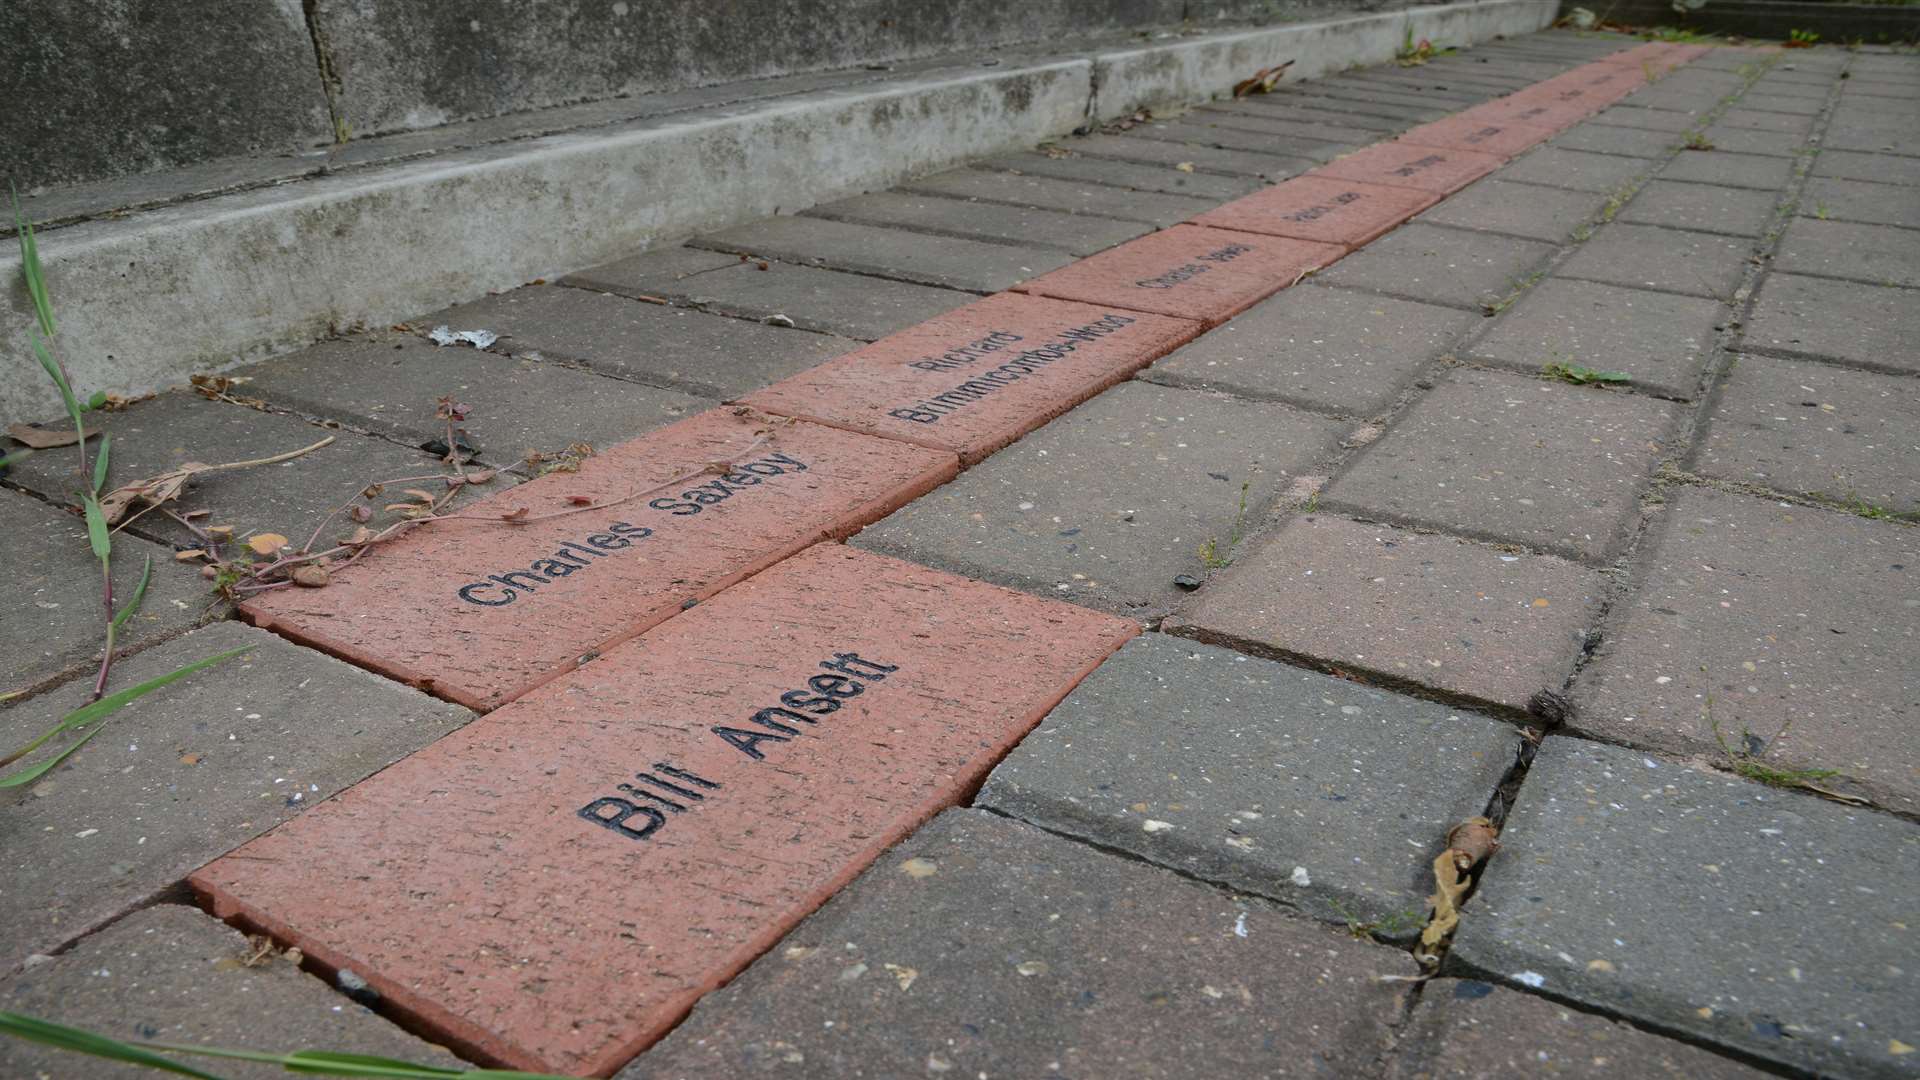 Memorial bricks dedicated to Royal British Legion volunteers